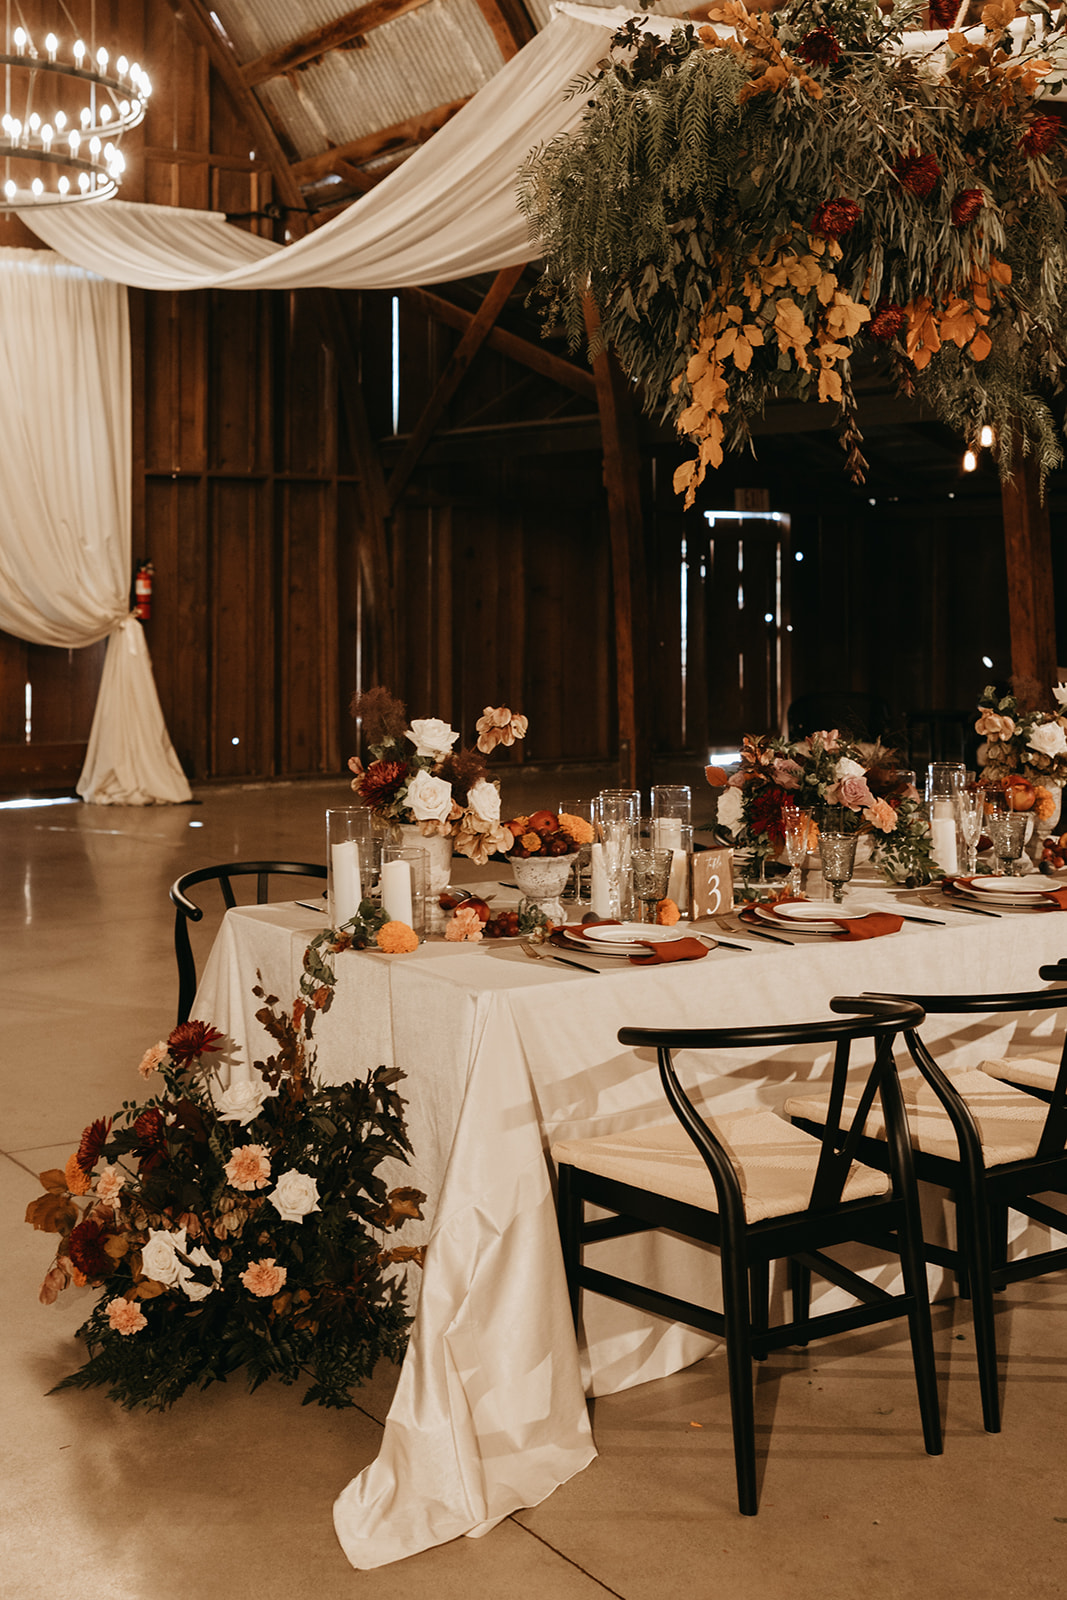 Tar Creek Ranch - A Rustic Wedding Venue in San Luis Obispo